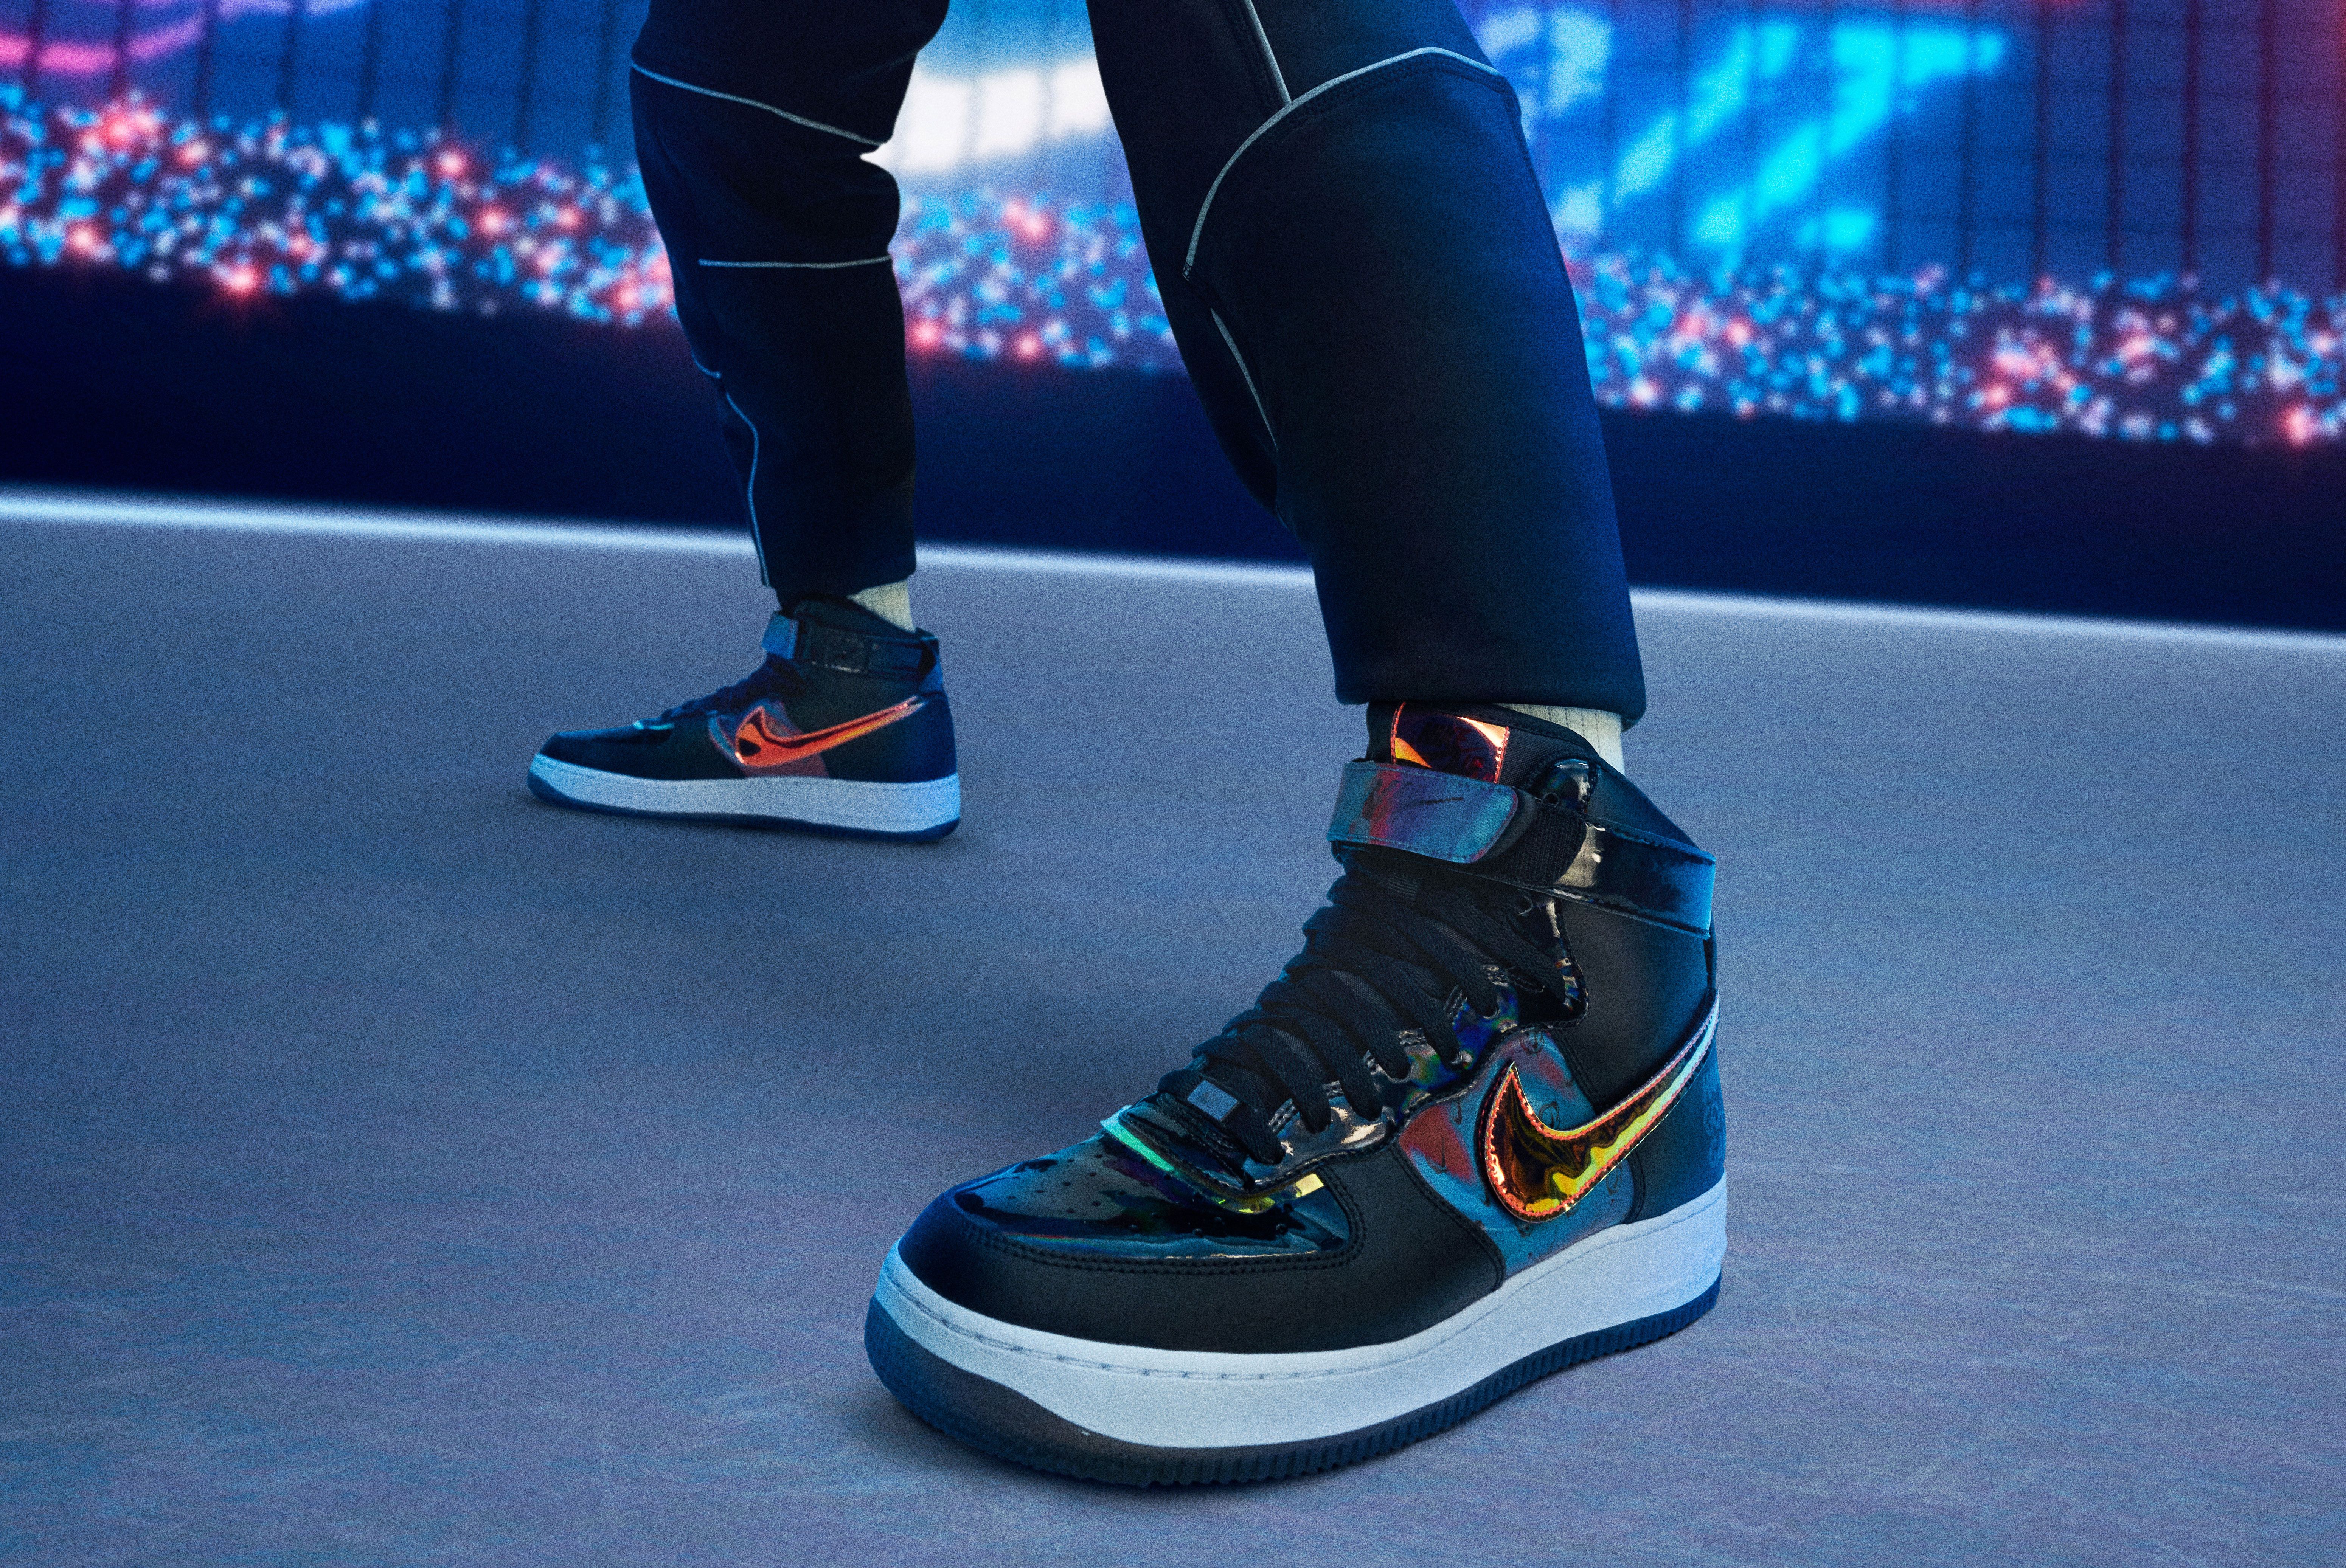 Closer Look: of Legends-Inspired - Sneaker